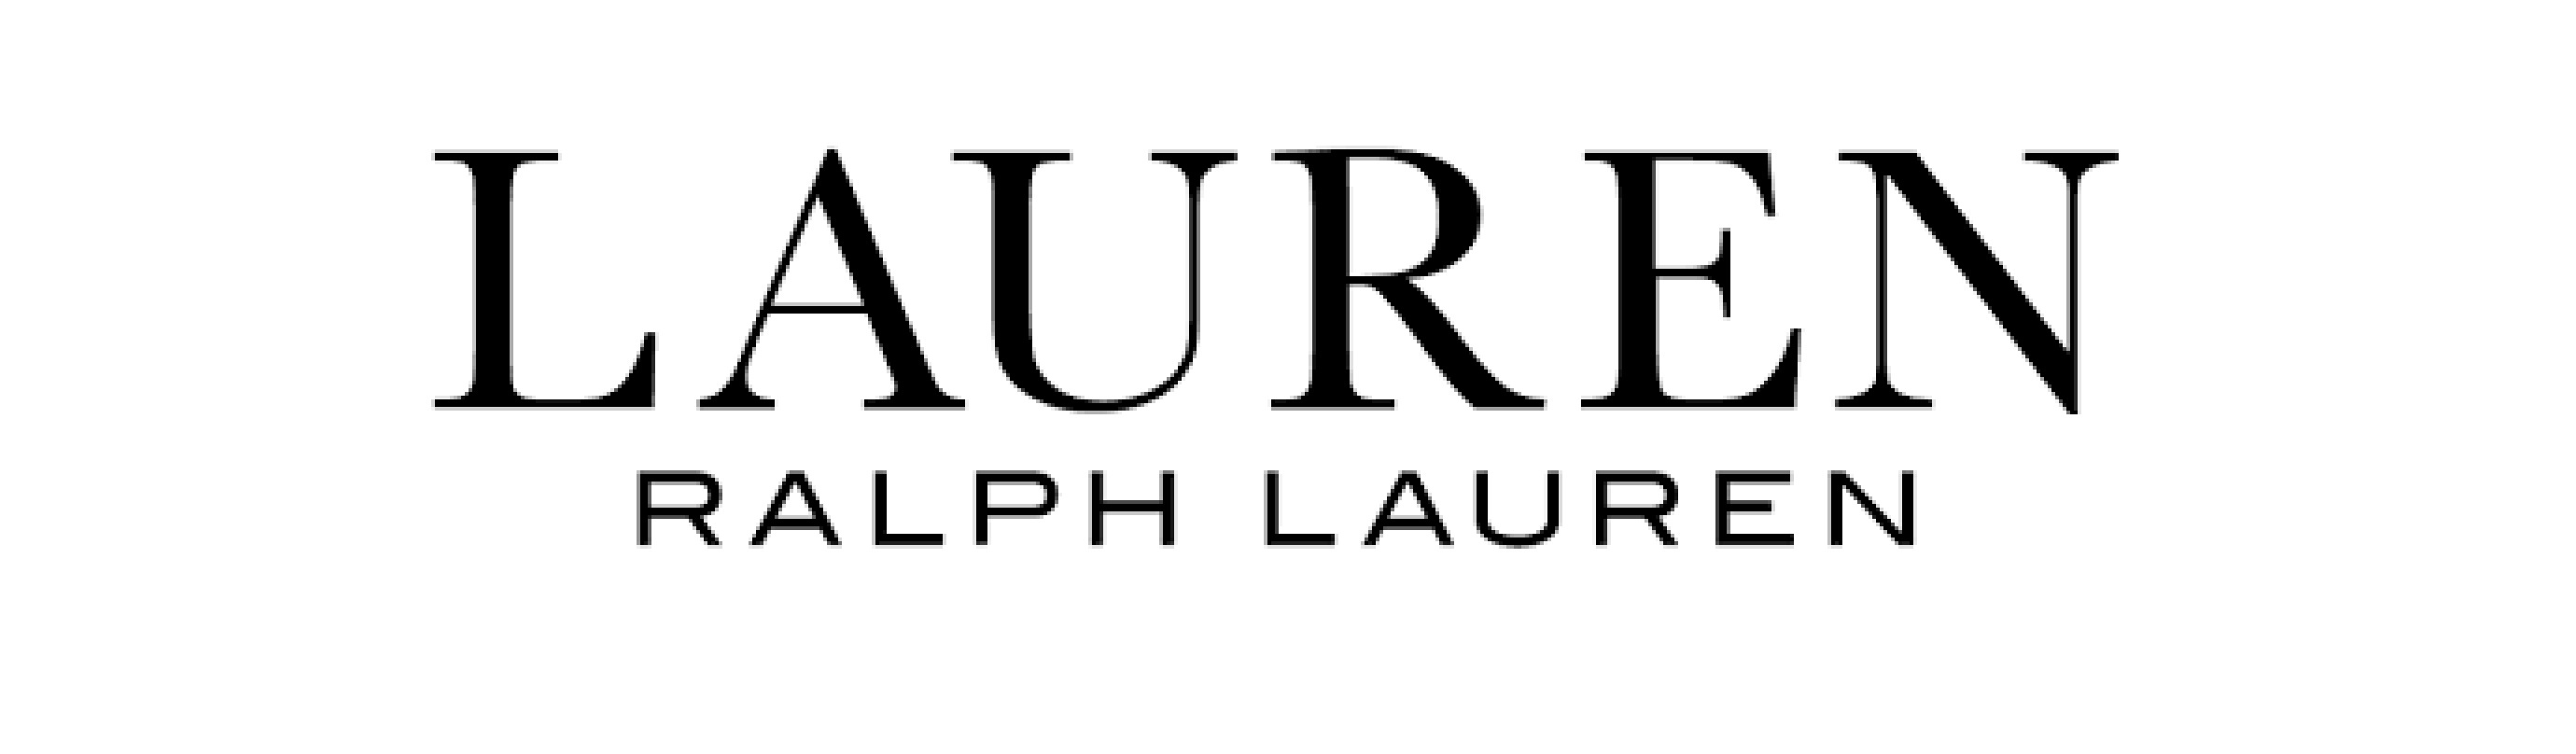 LAUREN RALPH LAURENロゴ